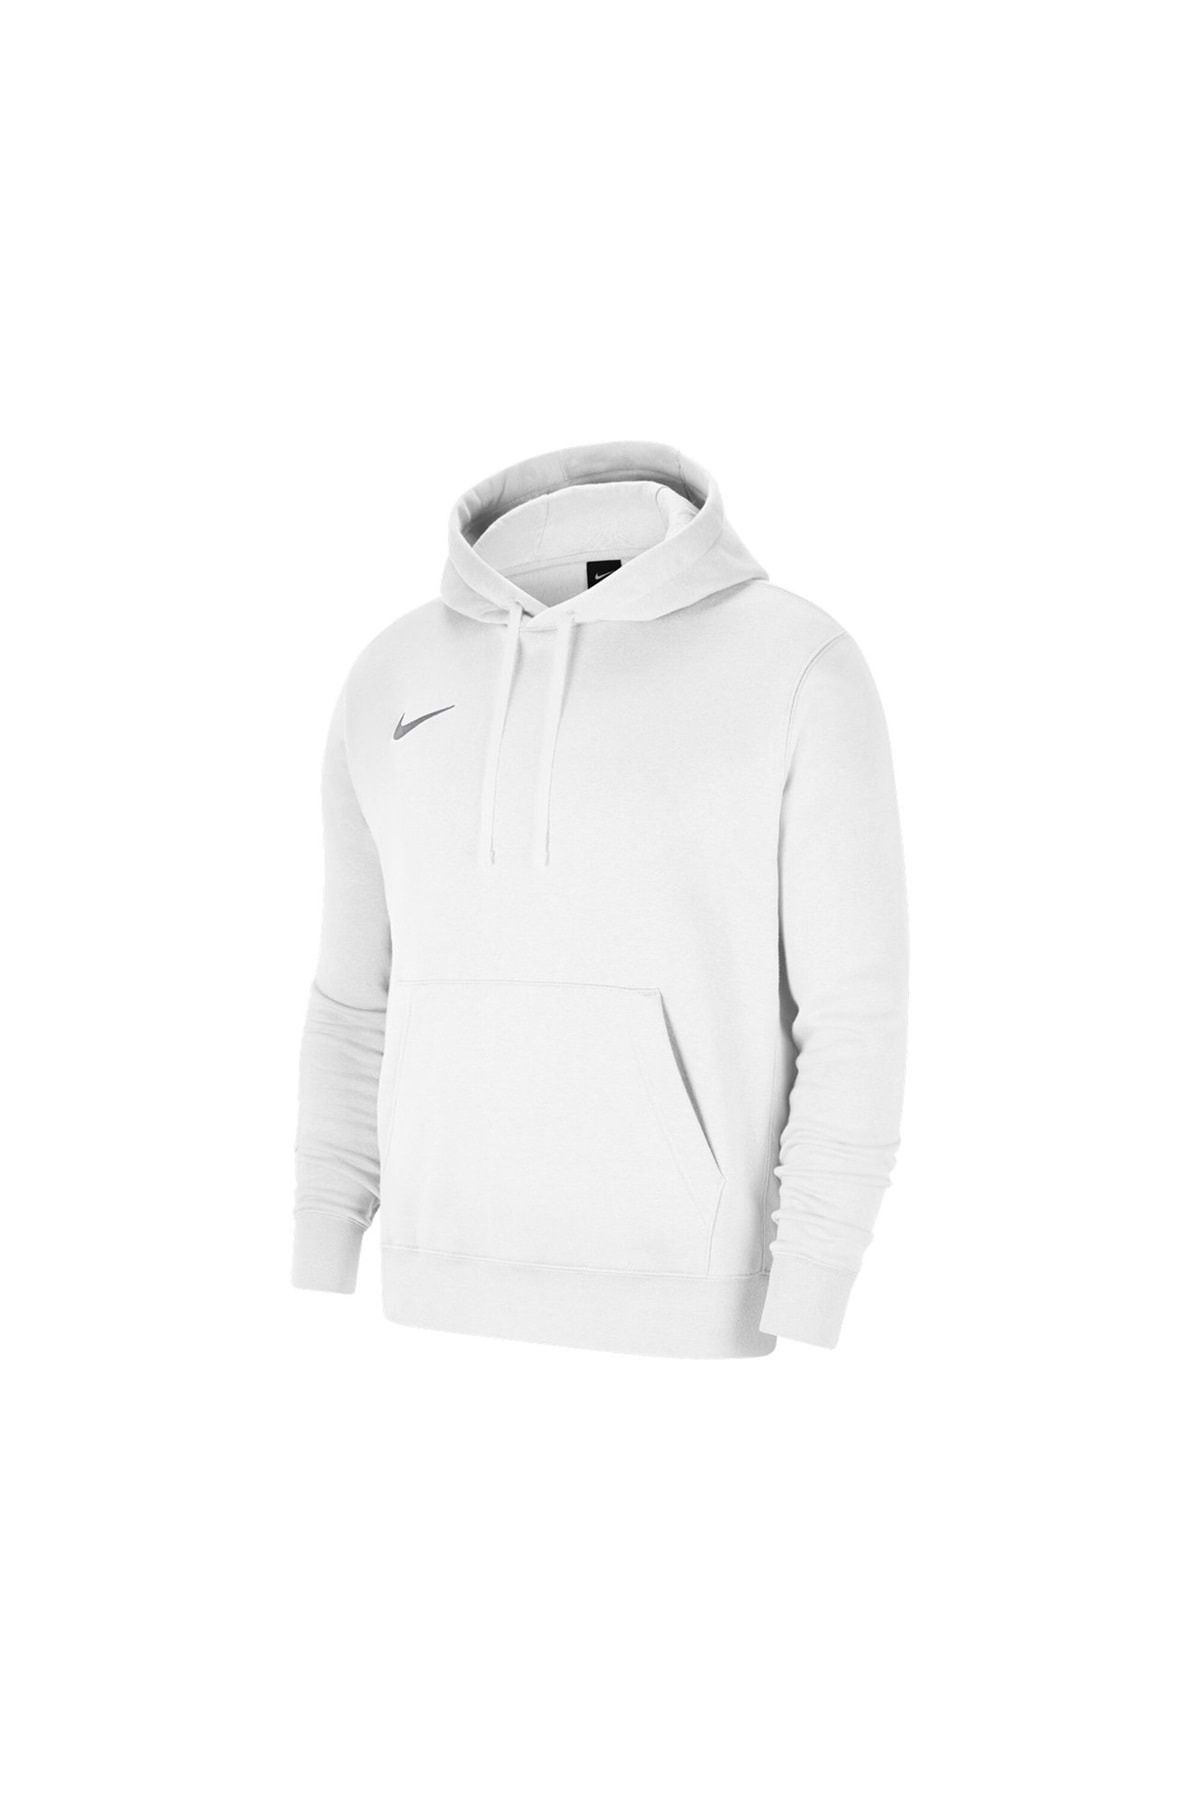 Nike Cw6894-101 Flc Park20 Fz Hoodie Erkek Kapüşonlu Spor Sweatshirt Beyaz